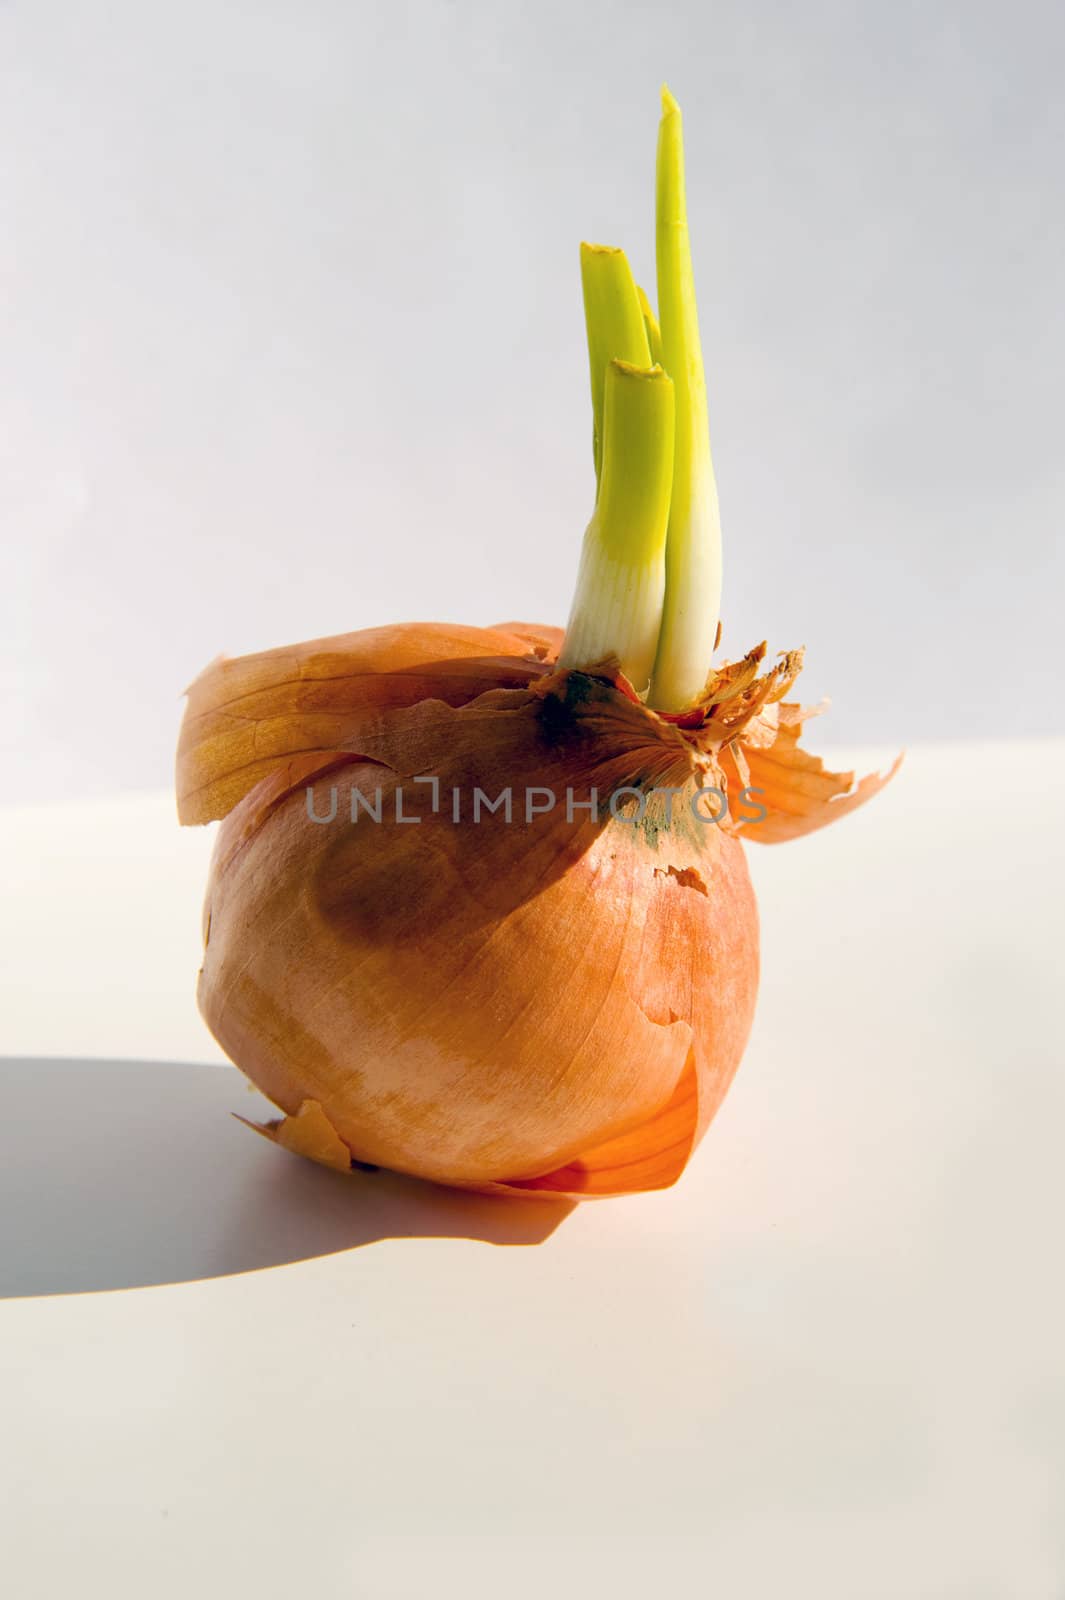 Onion by Alenmax